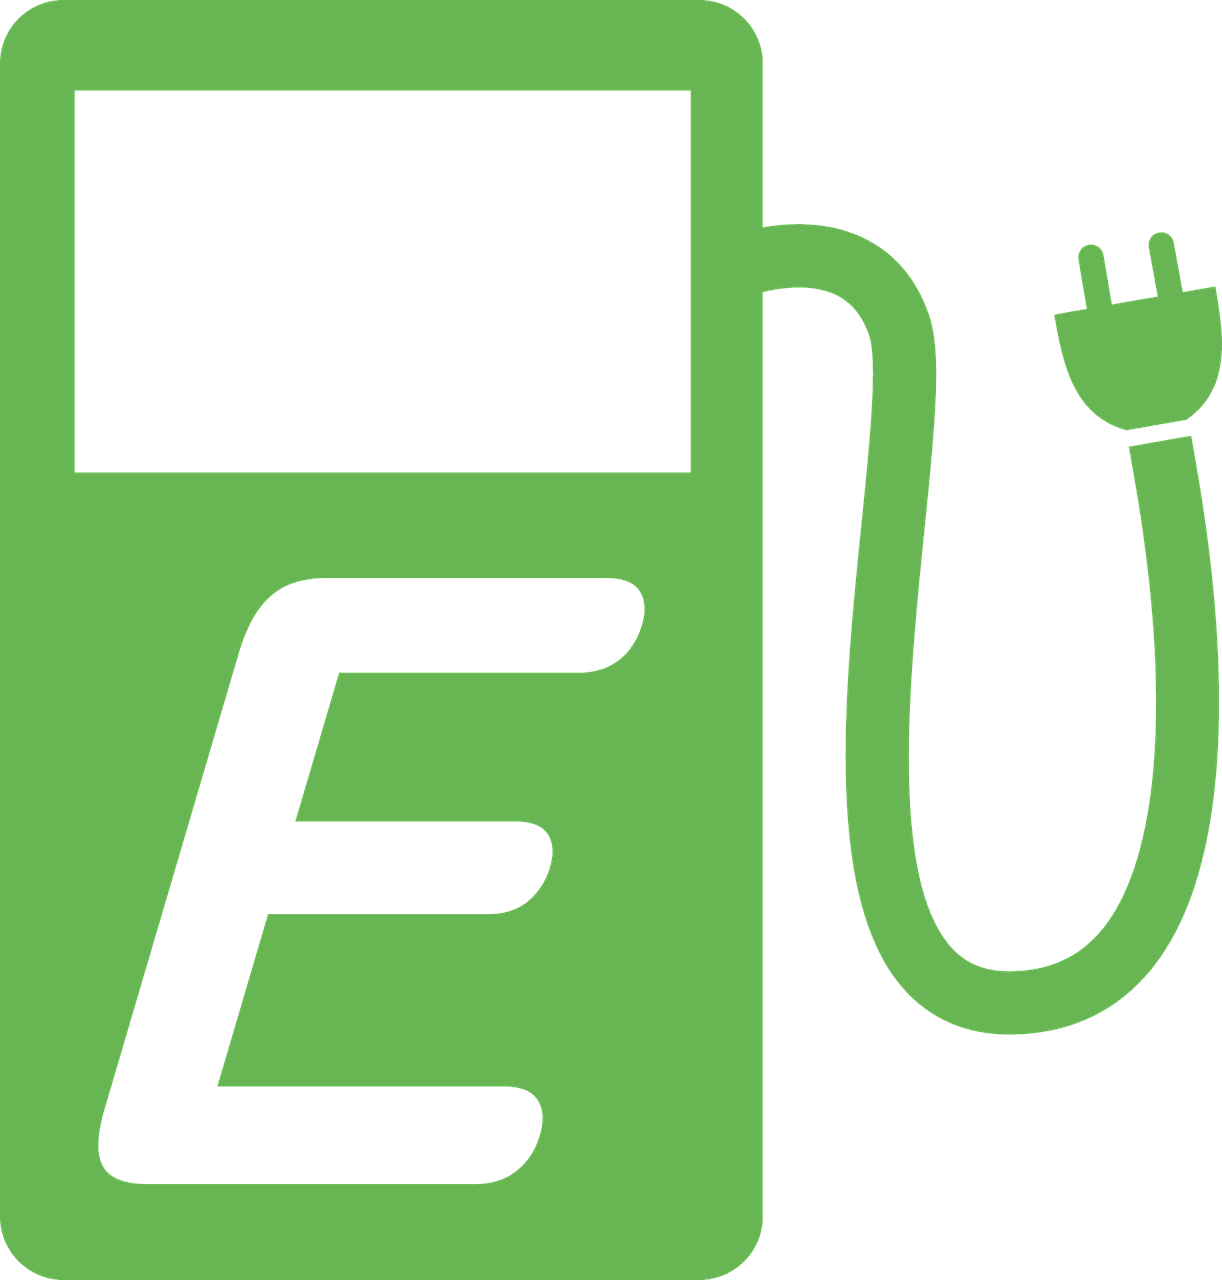 e-gas station, e mobility, e car, Electric car, electric vehicles, Evs